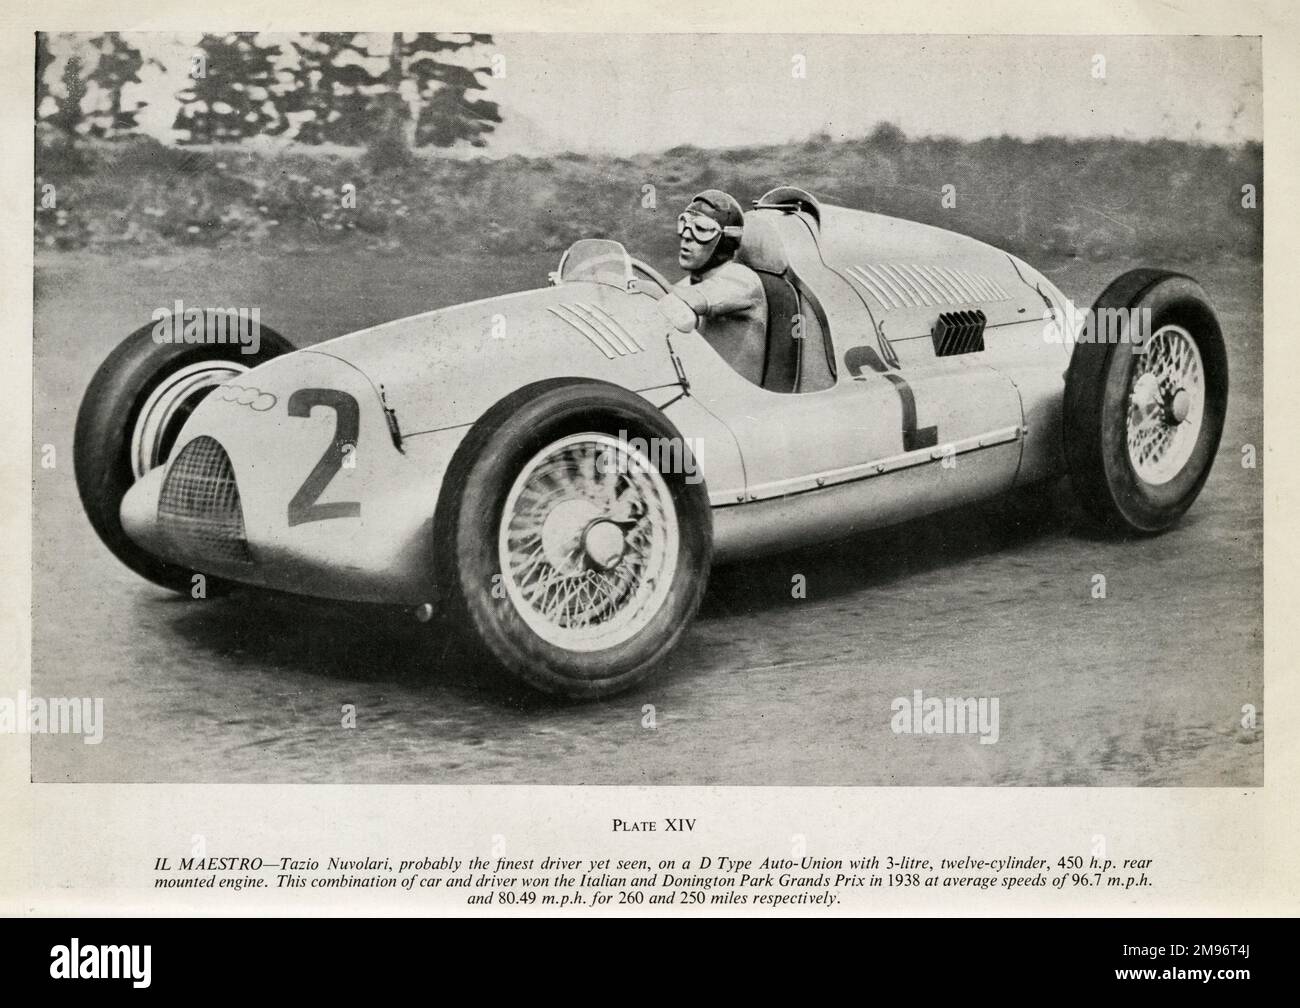 Tazio Nuvolari, wahrscheinlich der beste Fahrer in dieser Zeit, auf einem D-Type Auto-Union mit 3-Liter-12-Zylinder-Motor mit 450 ps hinten montiert. Diese Kombination aus Auto und Fahrer gewann 1938 den italienischen und Donington Park Grands Prix mit Durchschnittsgeschwindigkeiten von 96,7 mph bzw. 80,49 mph für 260 bzw. 250 Meilen Stockfoto